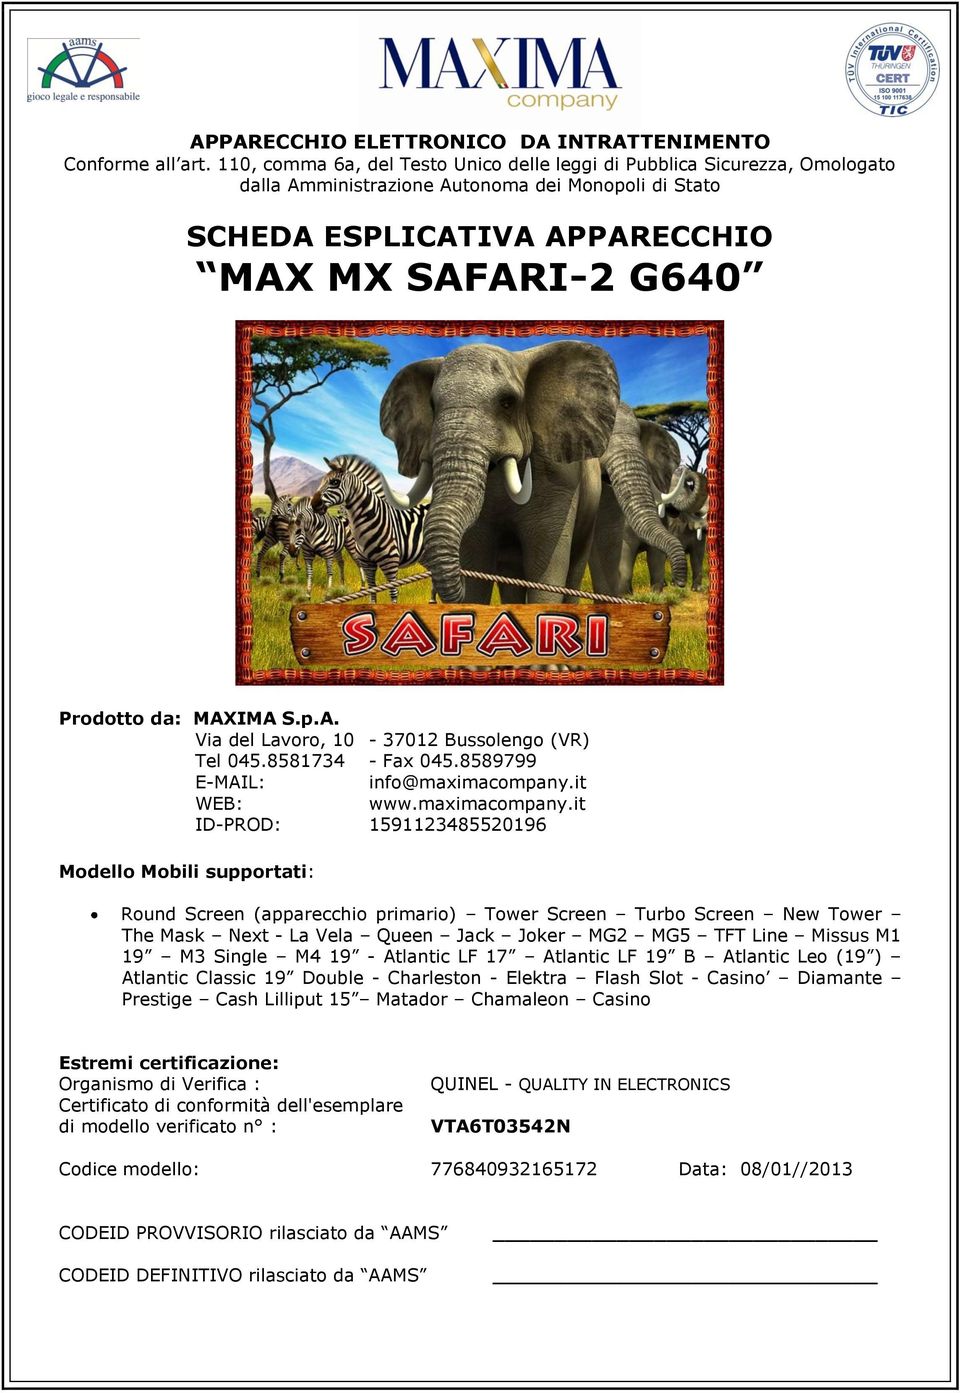 MAXIMA S.p.A. Via del Lavoro, 10-37012 Bussolengo (VR) Tel 045.8581734 - Fax 045.8589799 E-MAIL: info@maximacompany.